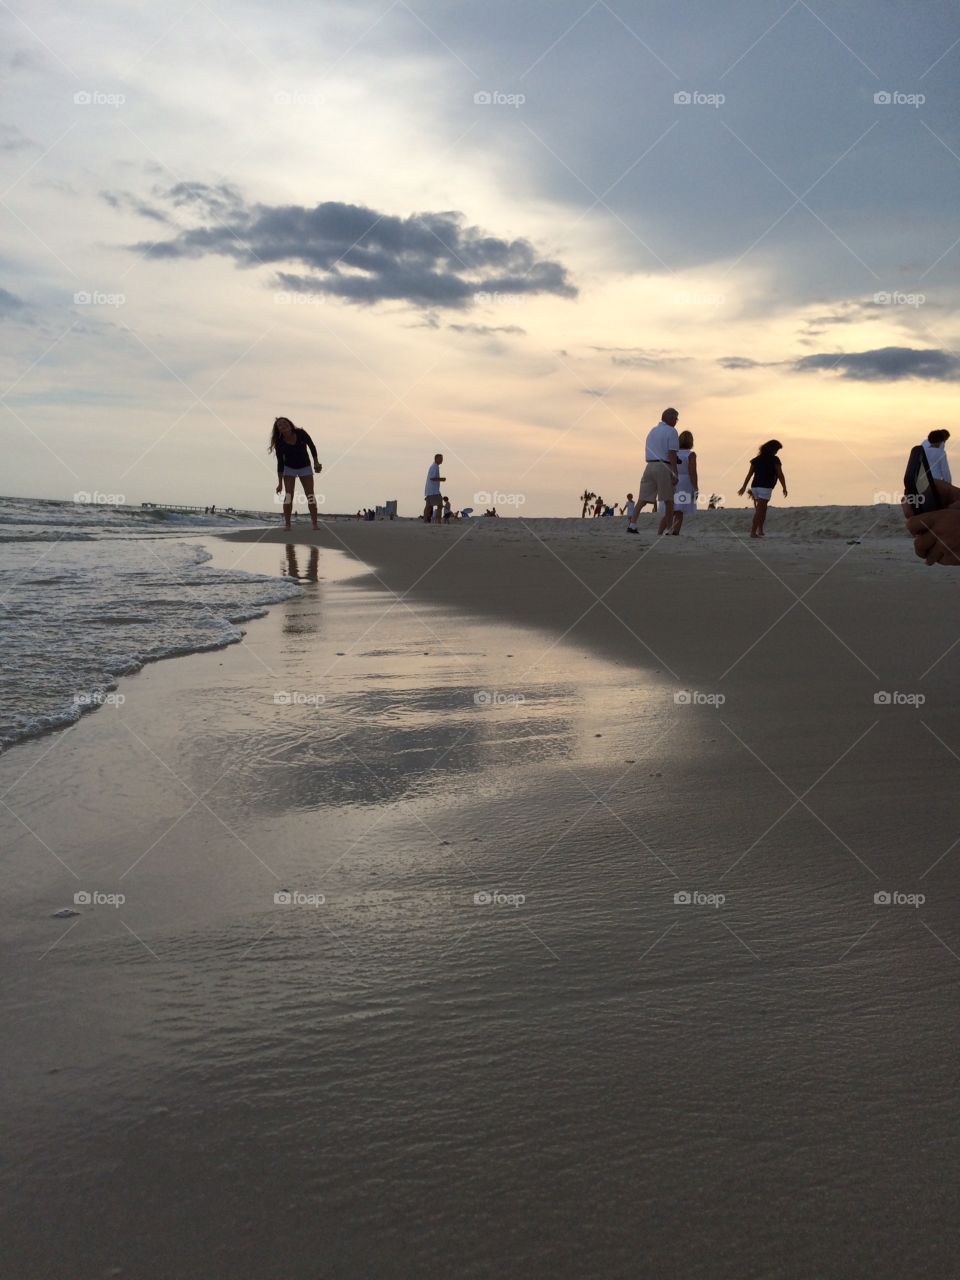 People enjoying a beautiful sunset on a sandy beach